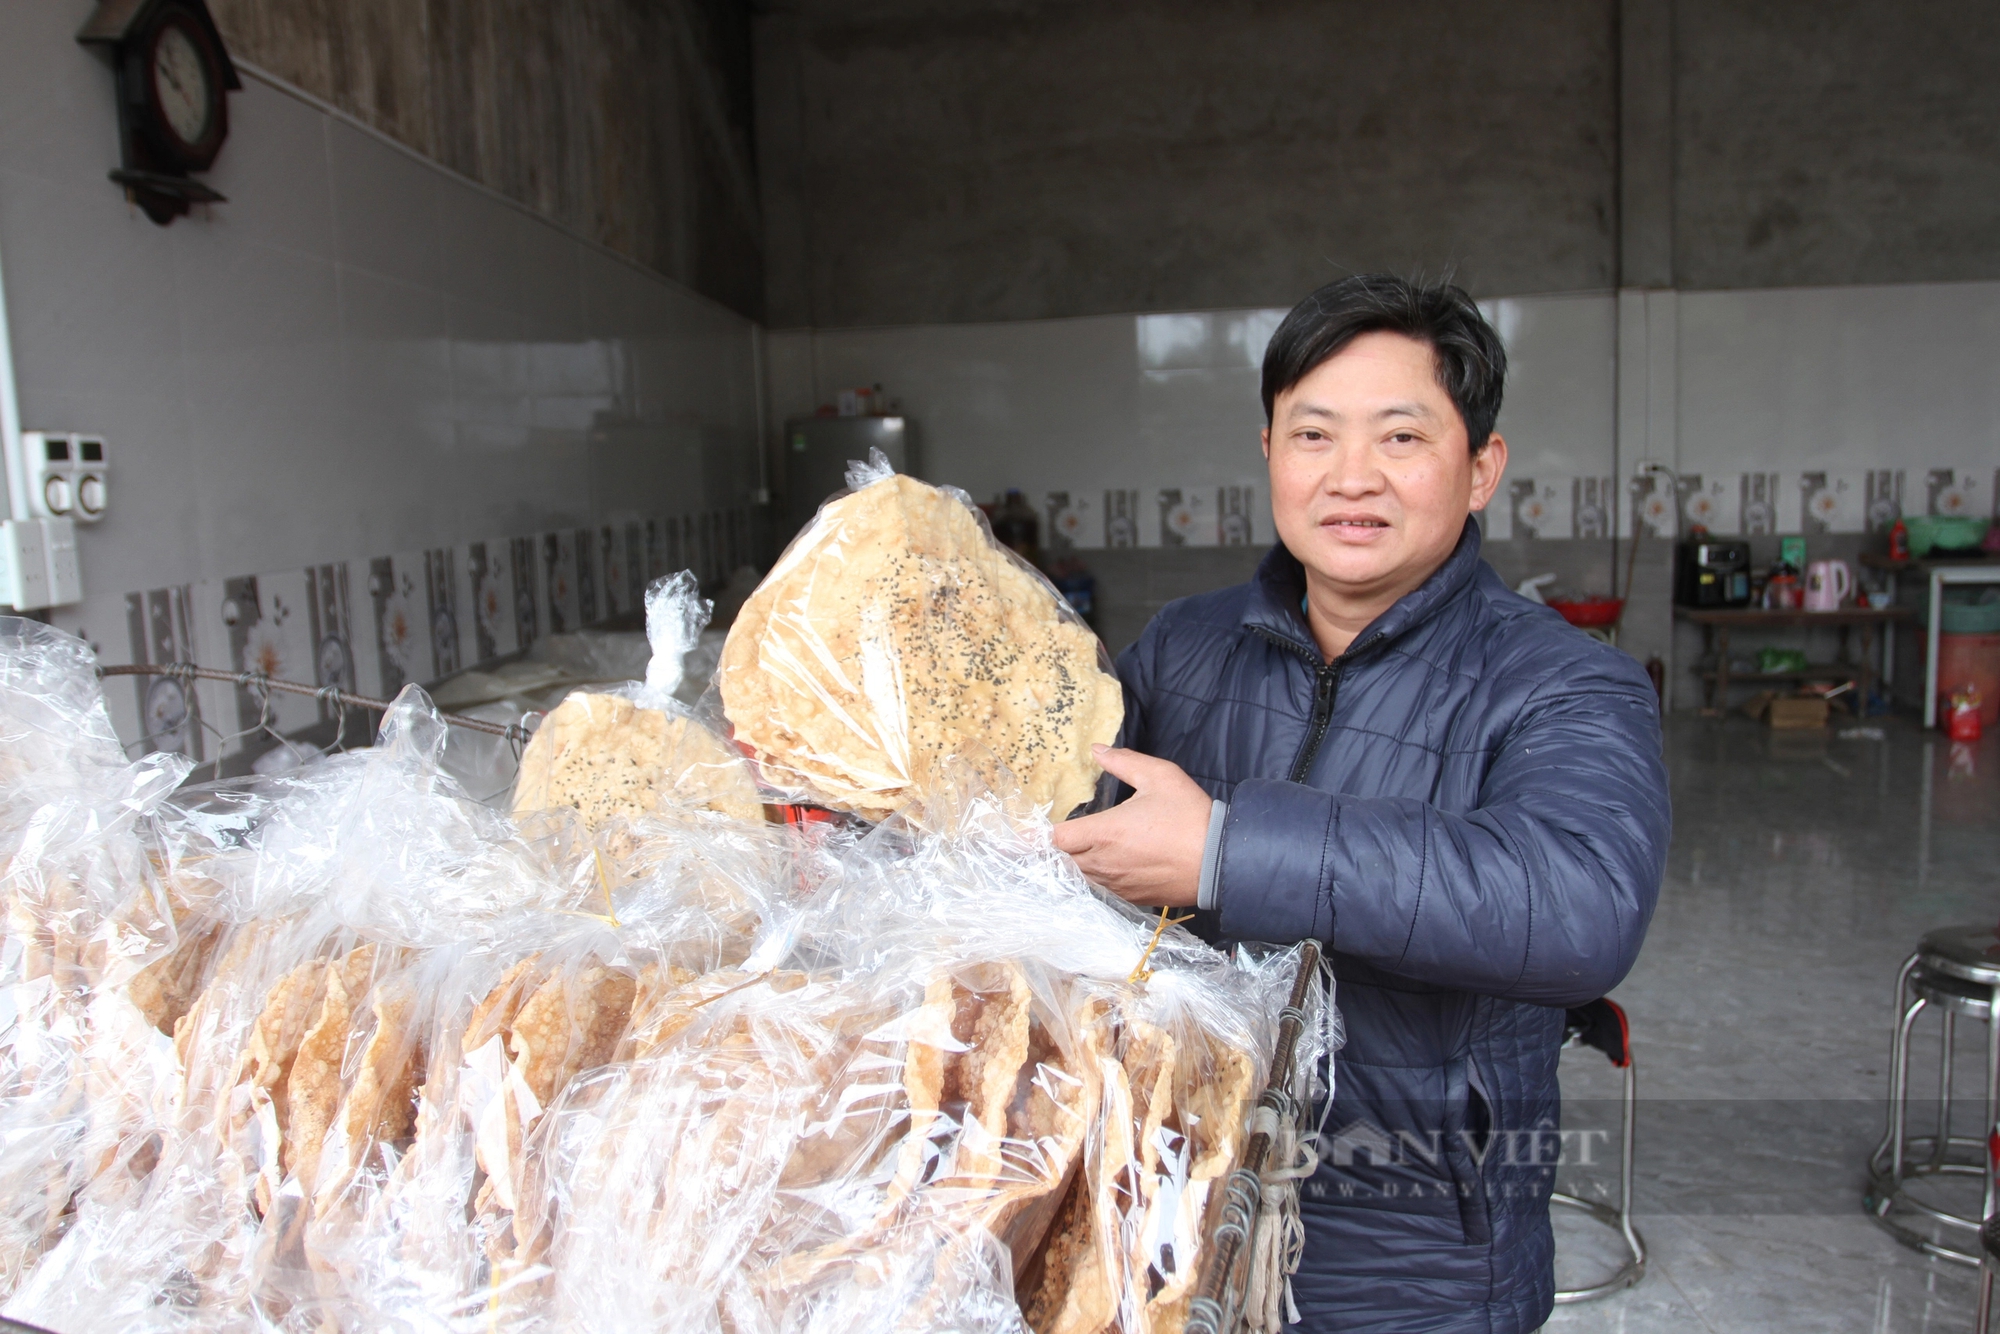 Bỏ nghề mổ lợn, một người Thái Nguyên chuyển sang làm món bánh "tuổi thơ" này, bán đắt hàng- Ảnh 1.